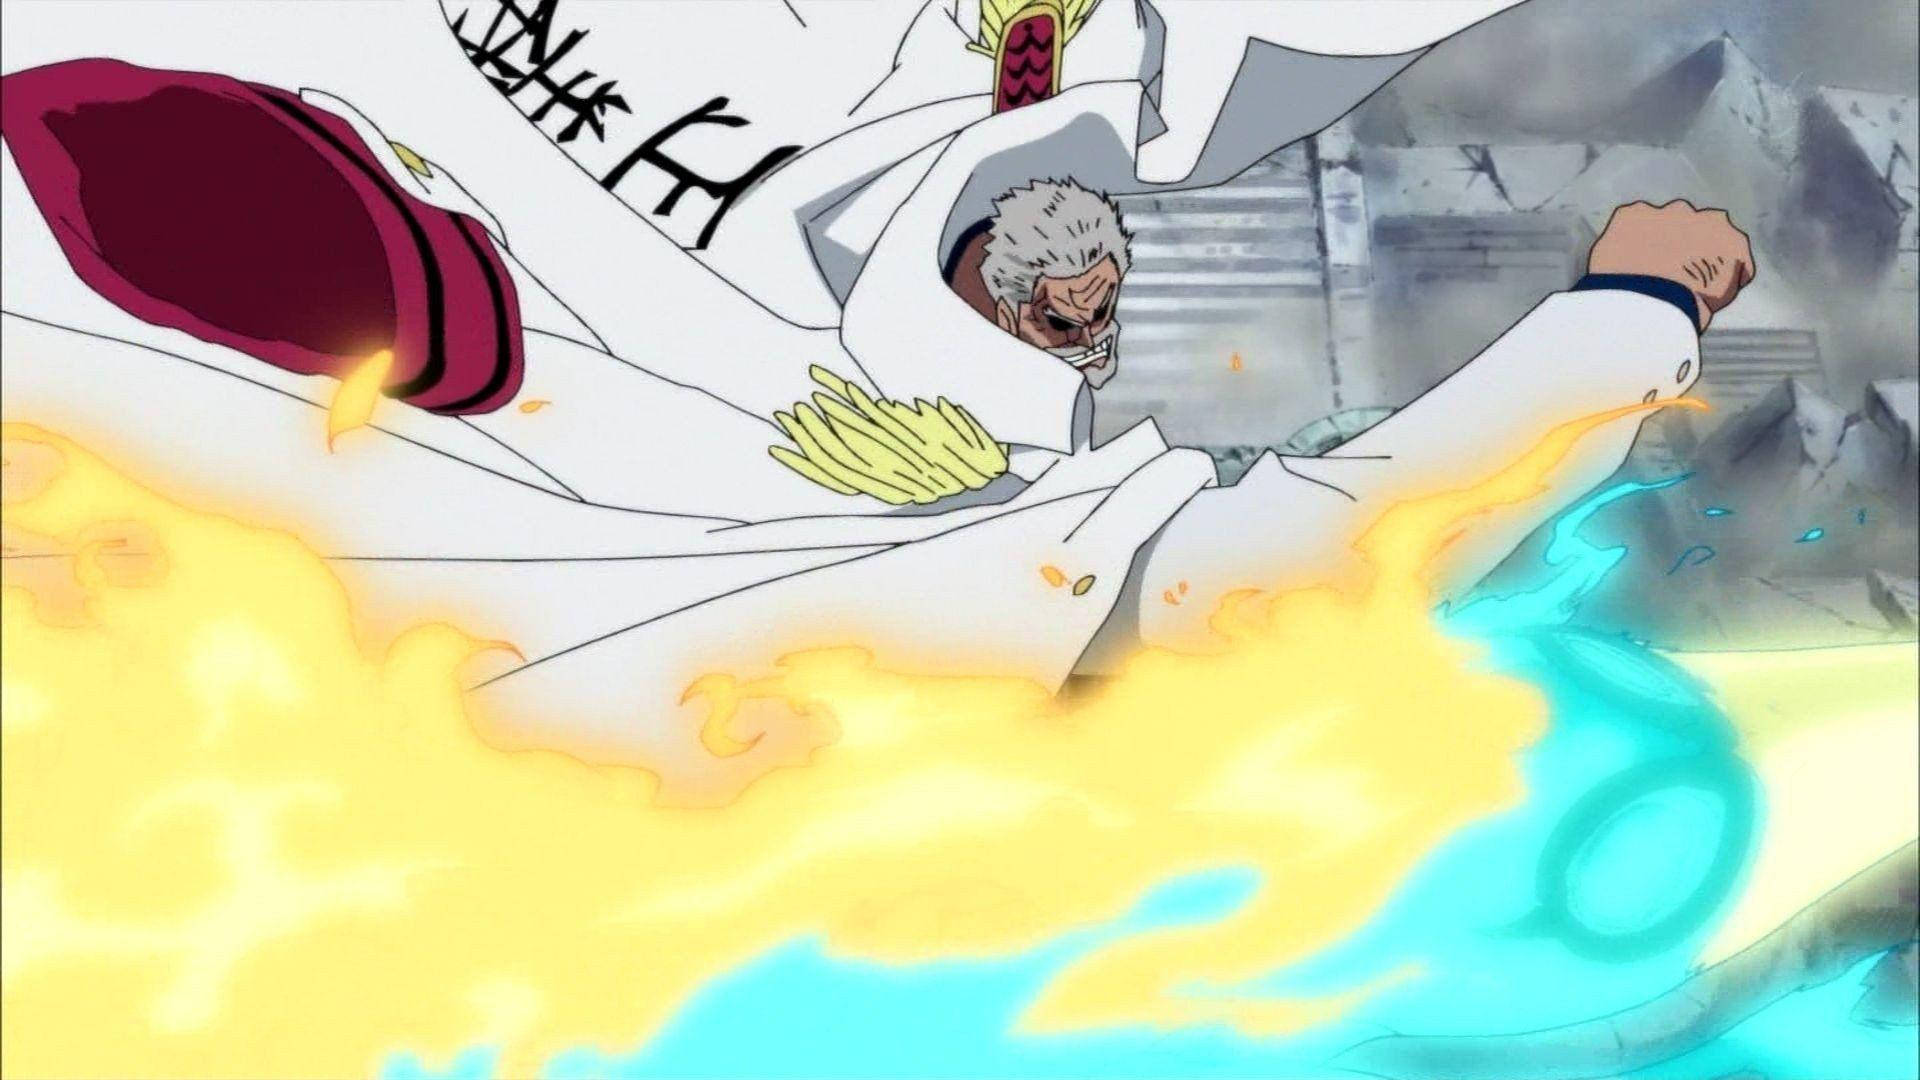 An Epic Battle Stance of Monkey D Garp from One Piece Wallpaper